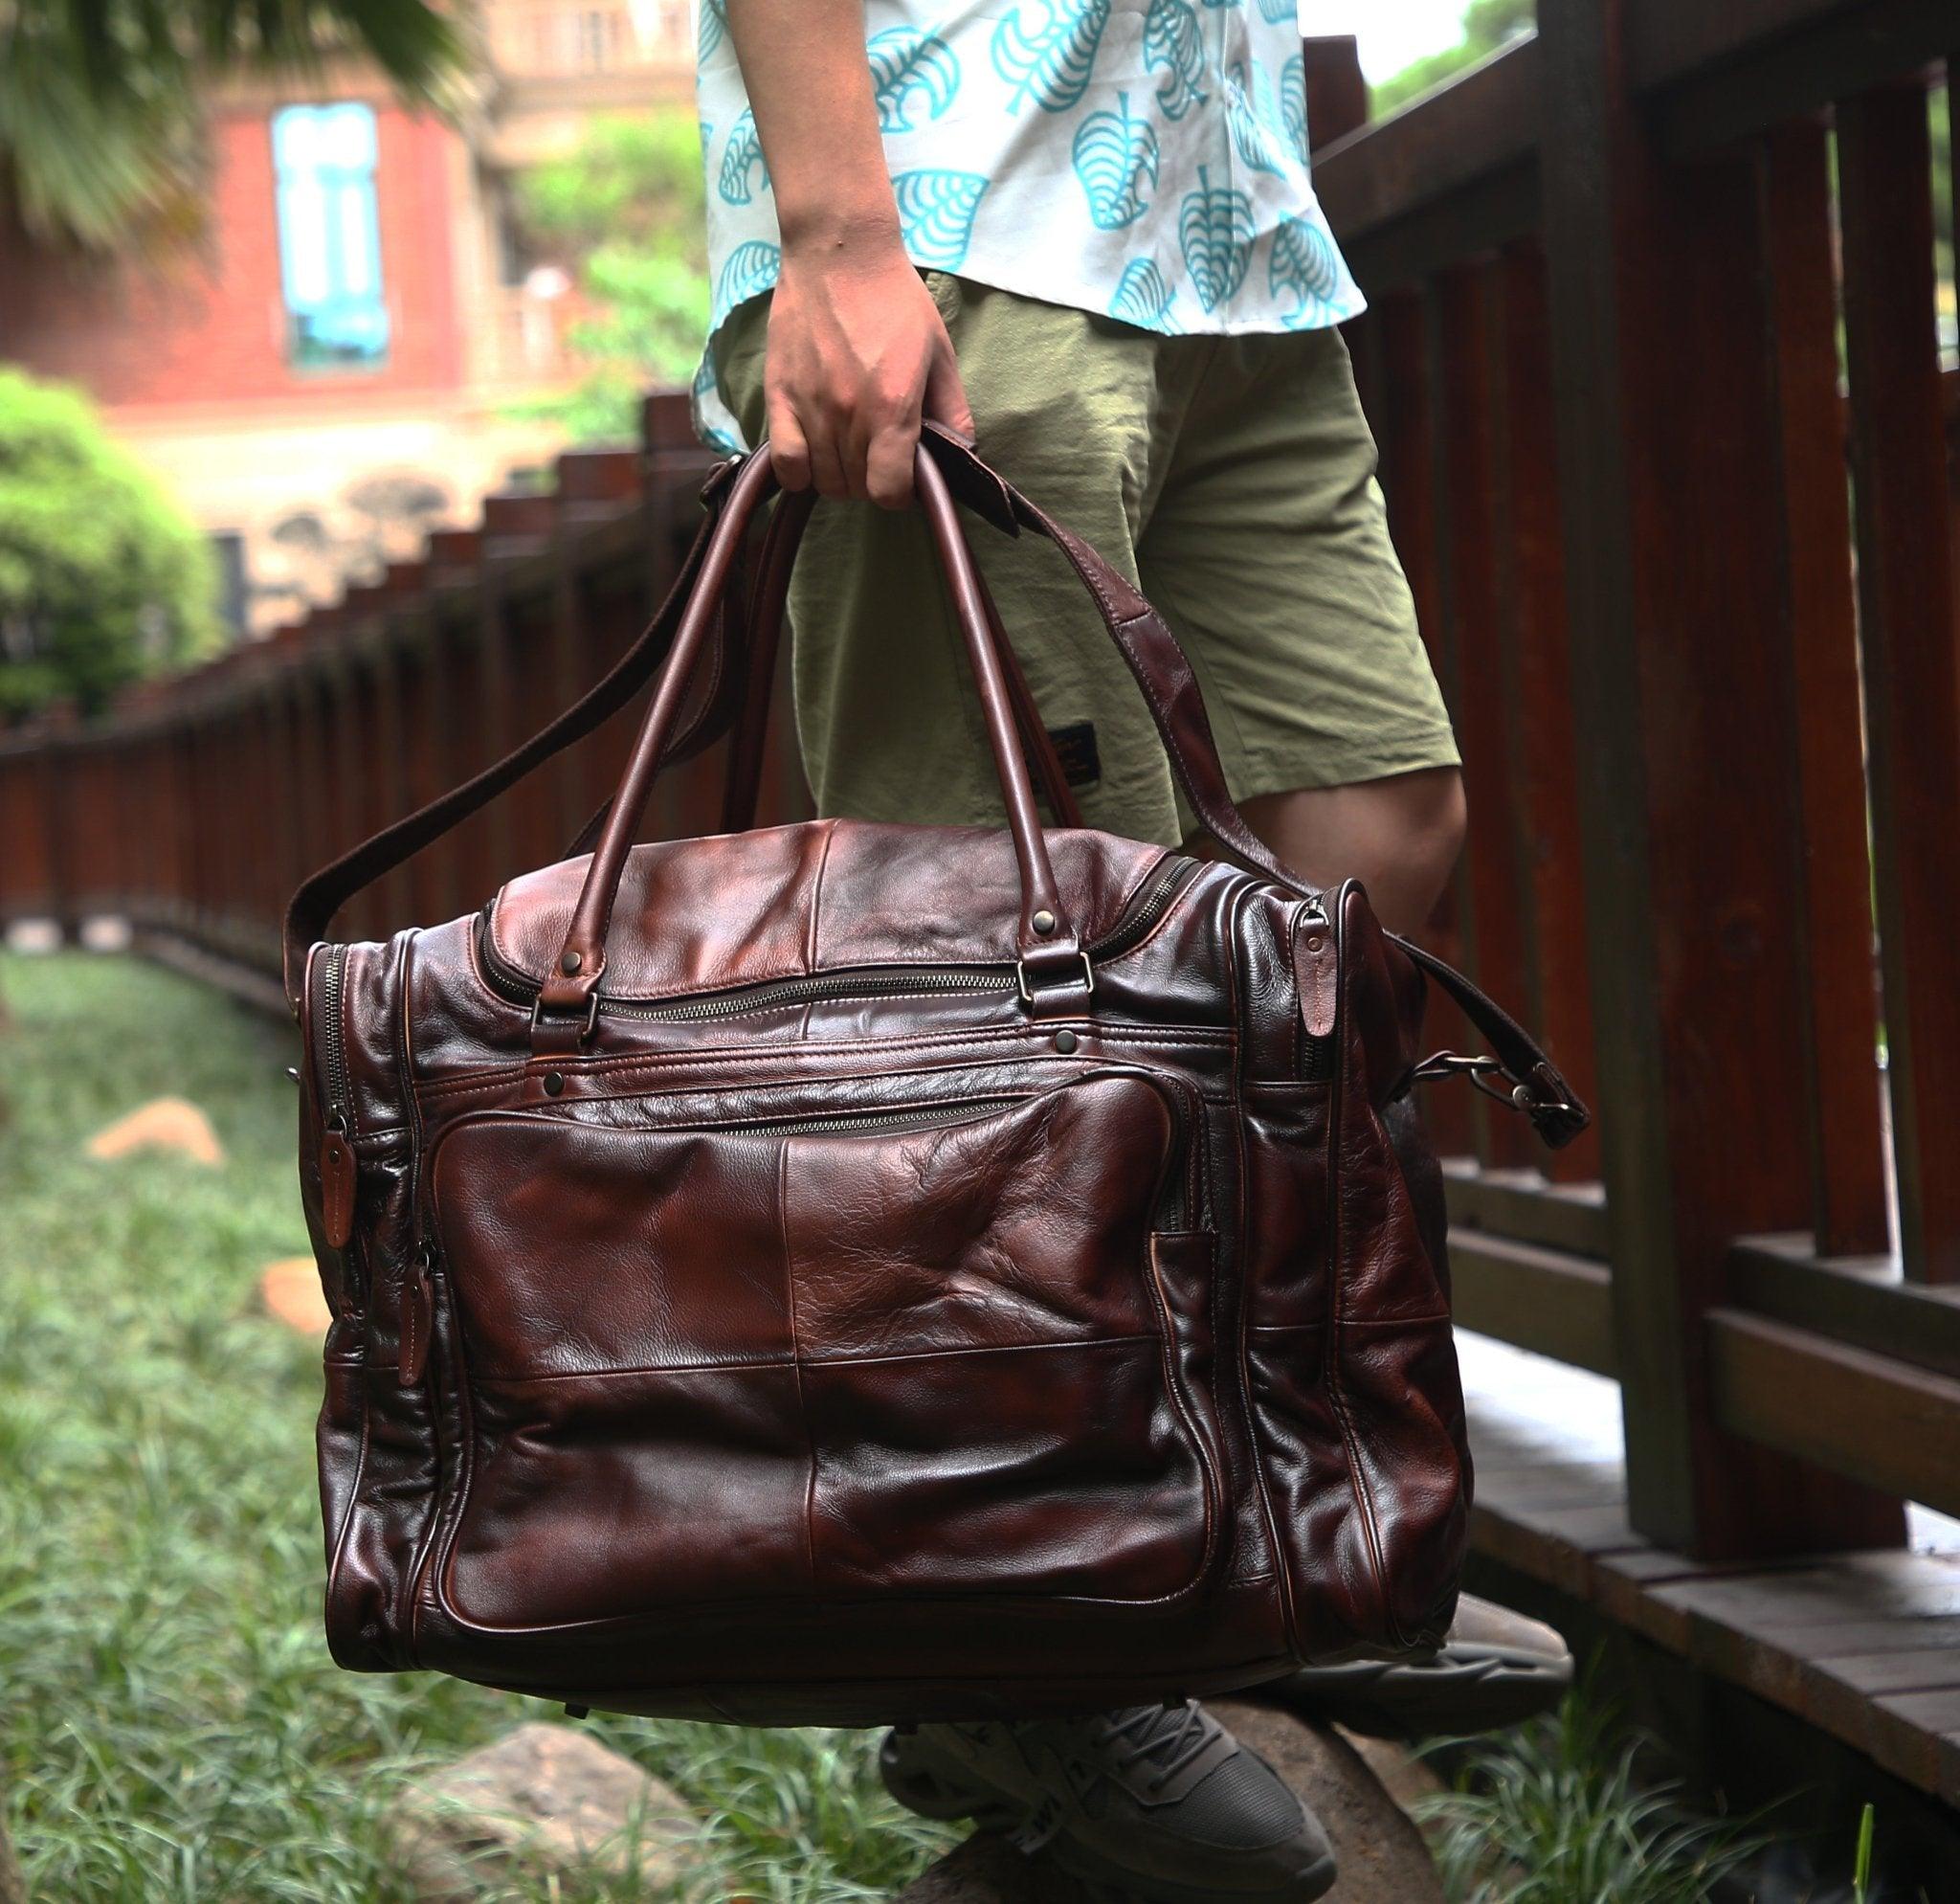 Woosir Designer Weekender Bag Leather Vegetable Tanned